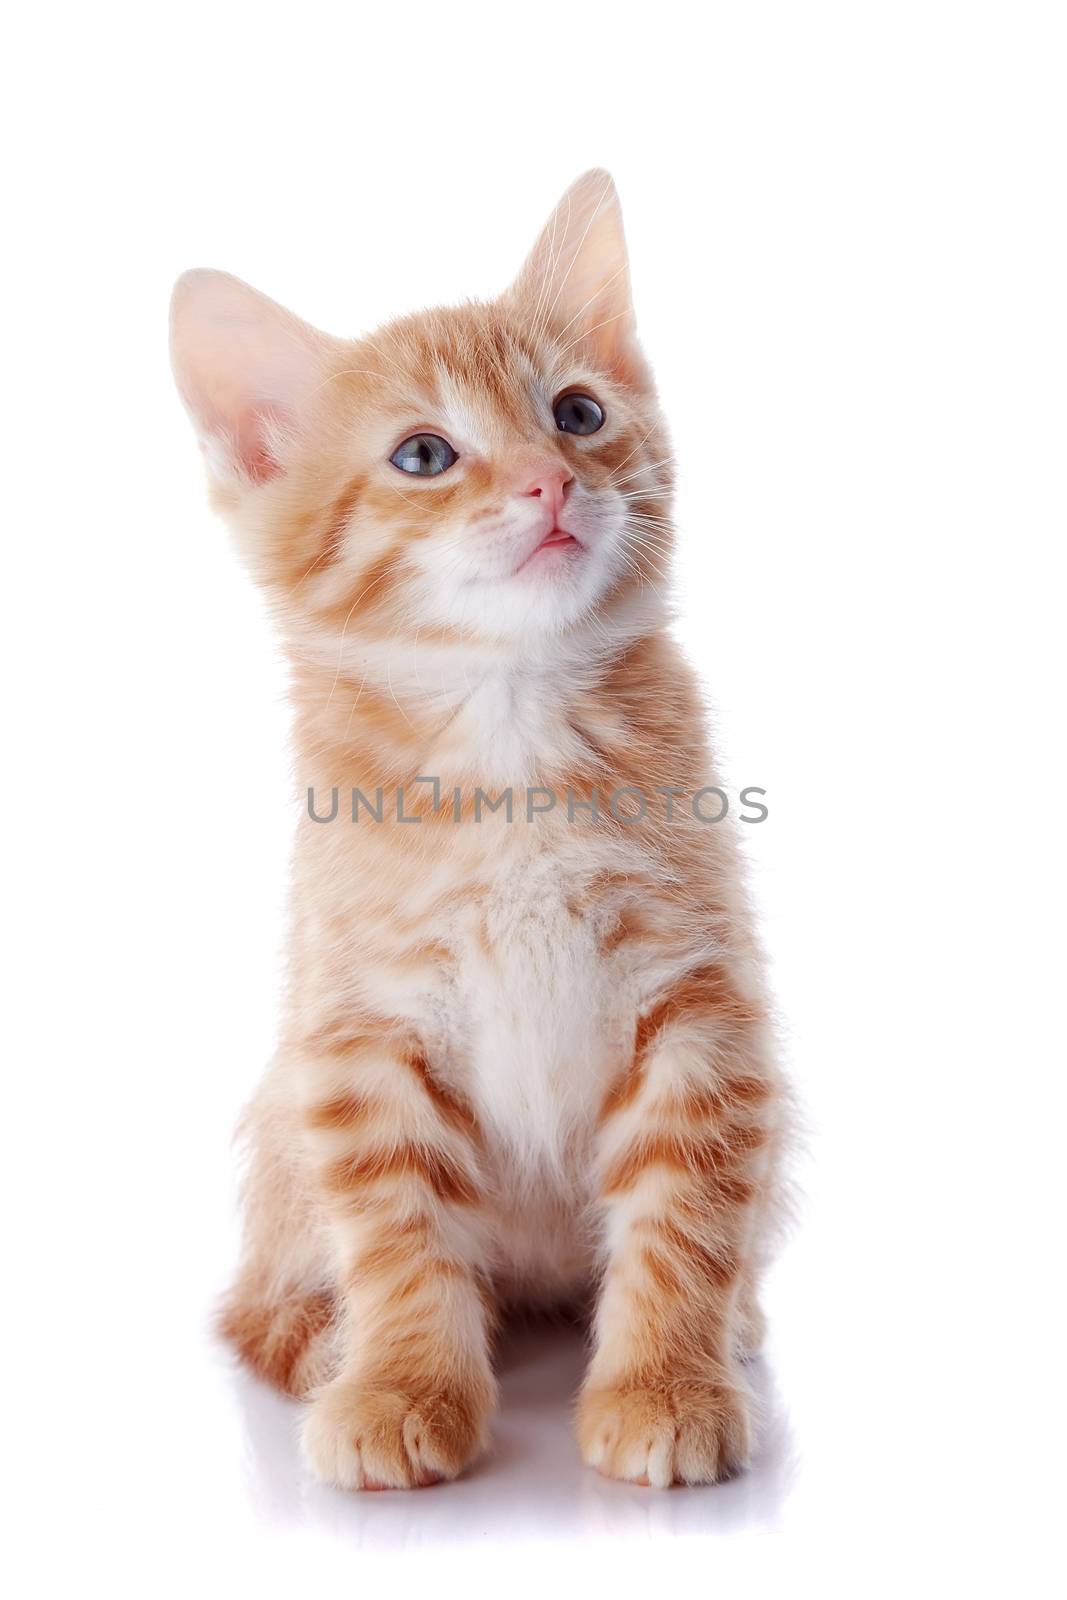 Red kitten. Sitting cat. Kitten on a white background. Red striped kitten. Small predator.